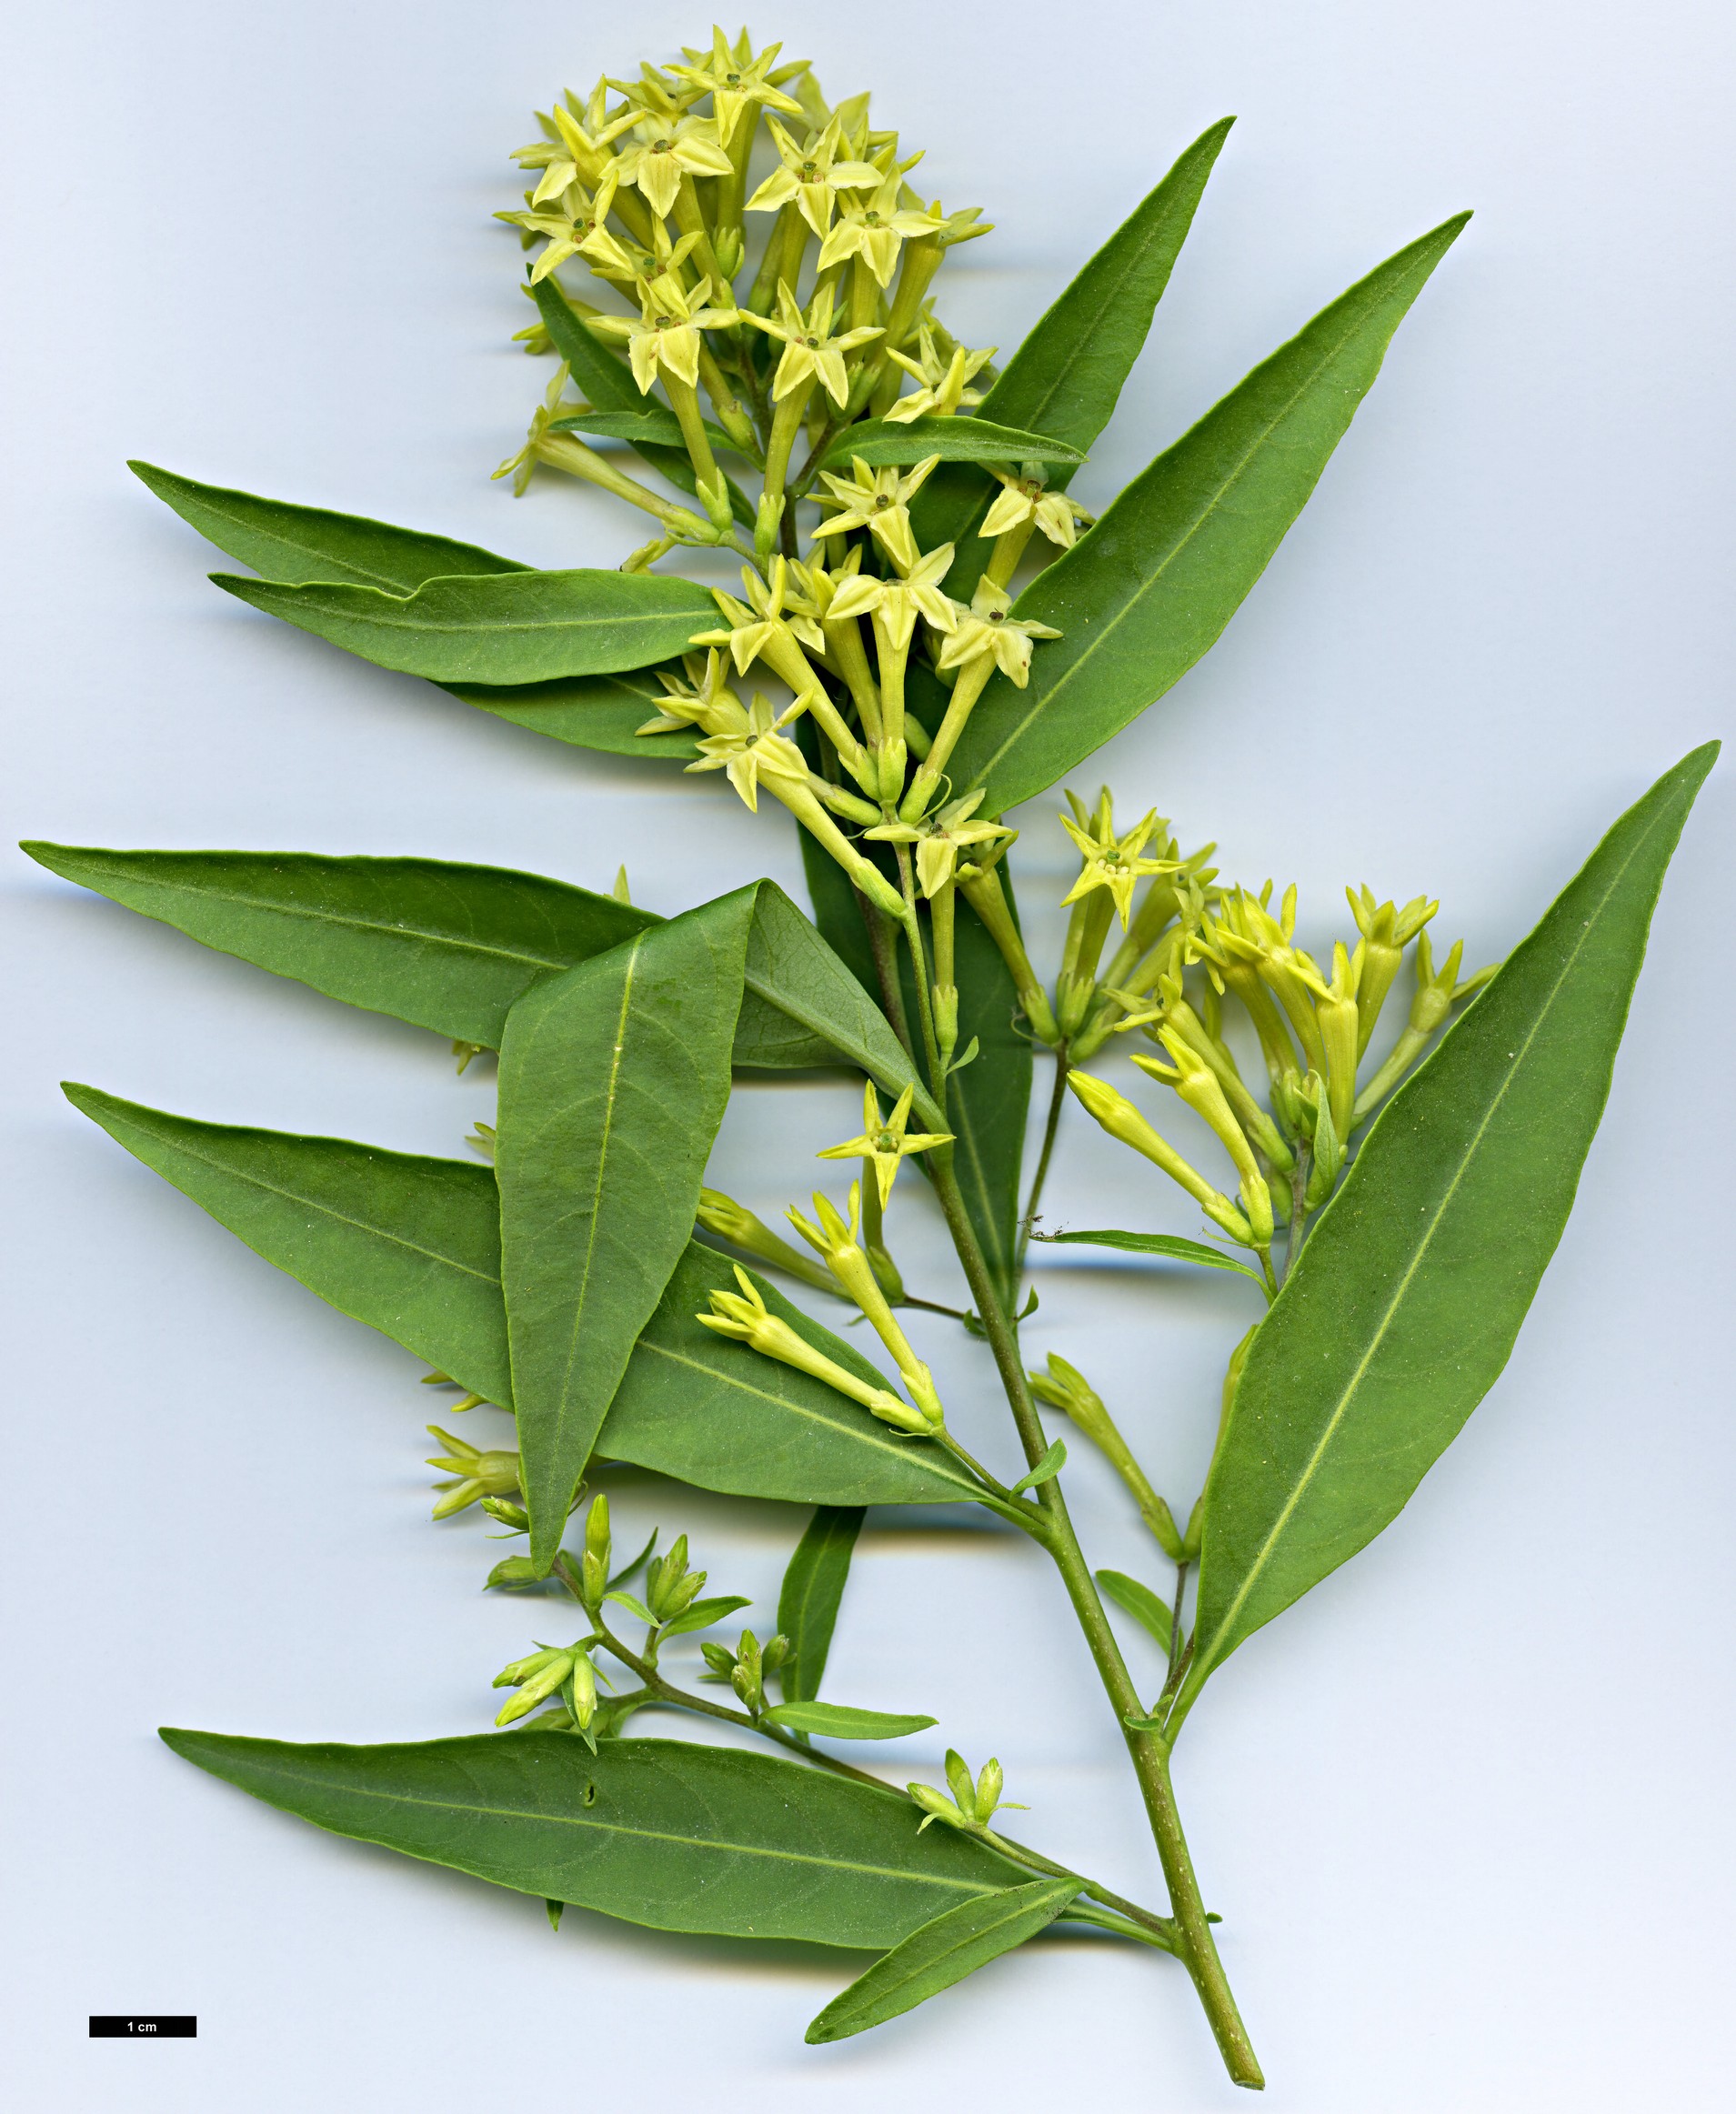 High resolution image: Family: Solanaceae - Genus: Cestrum - Taxon: parqui